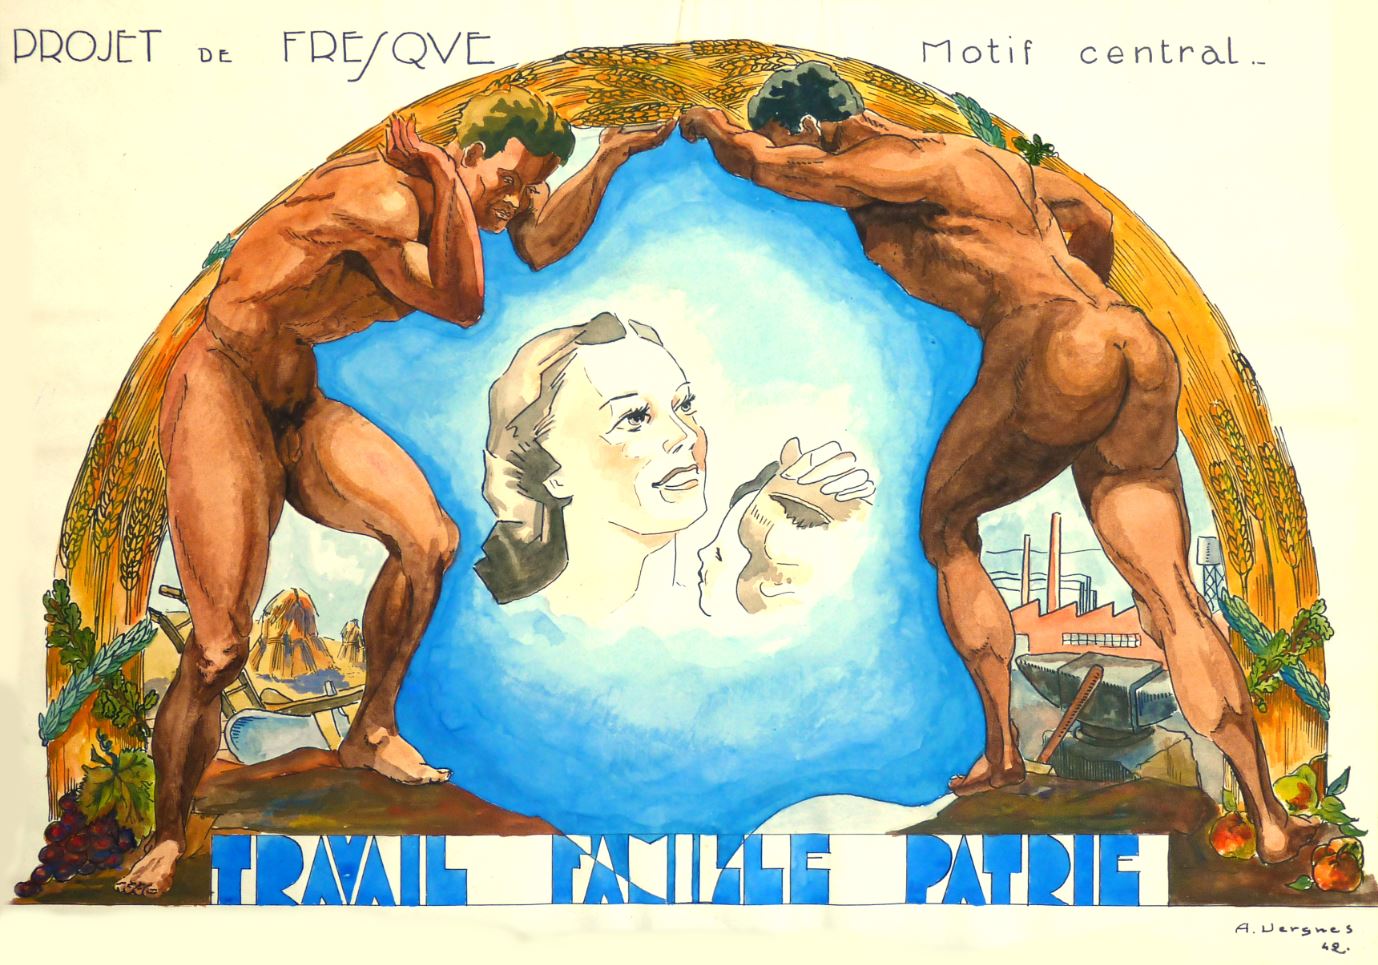 1942 Andre Marie Vergnes Projet de fresque Travail Famille Patrie